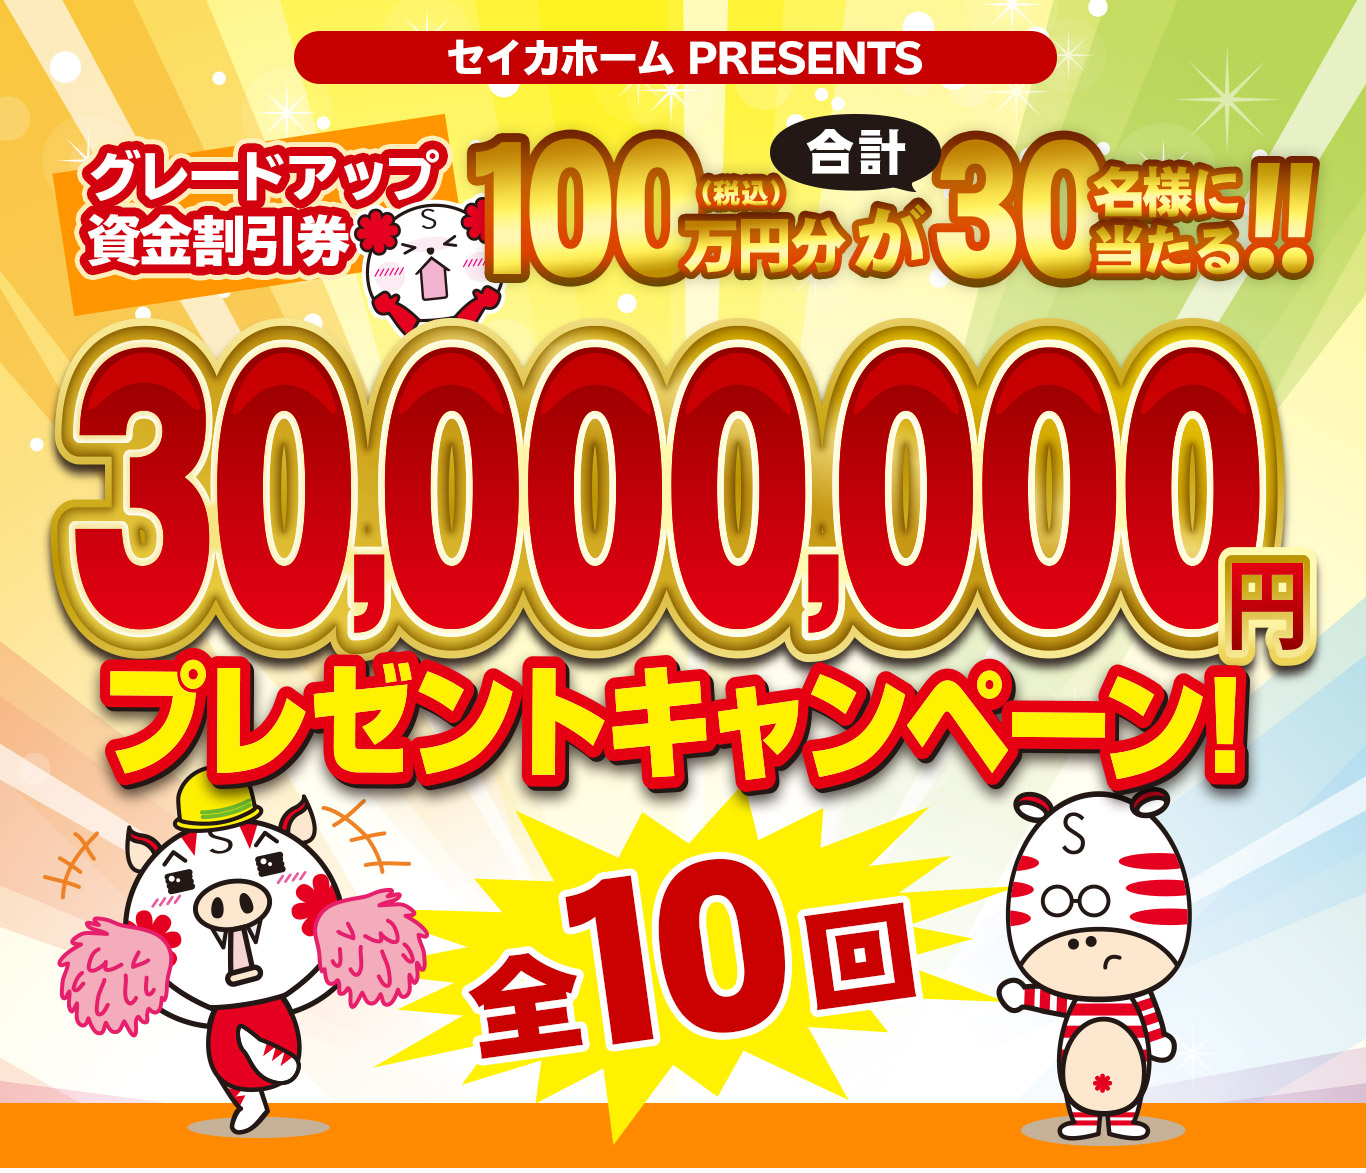 3000万円プレゼントキャンペーン